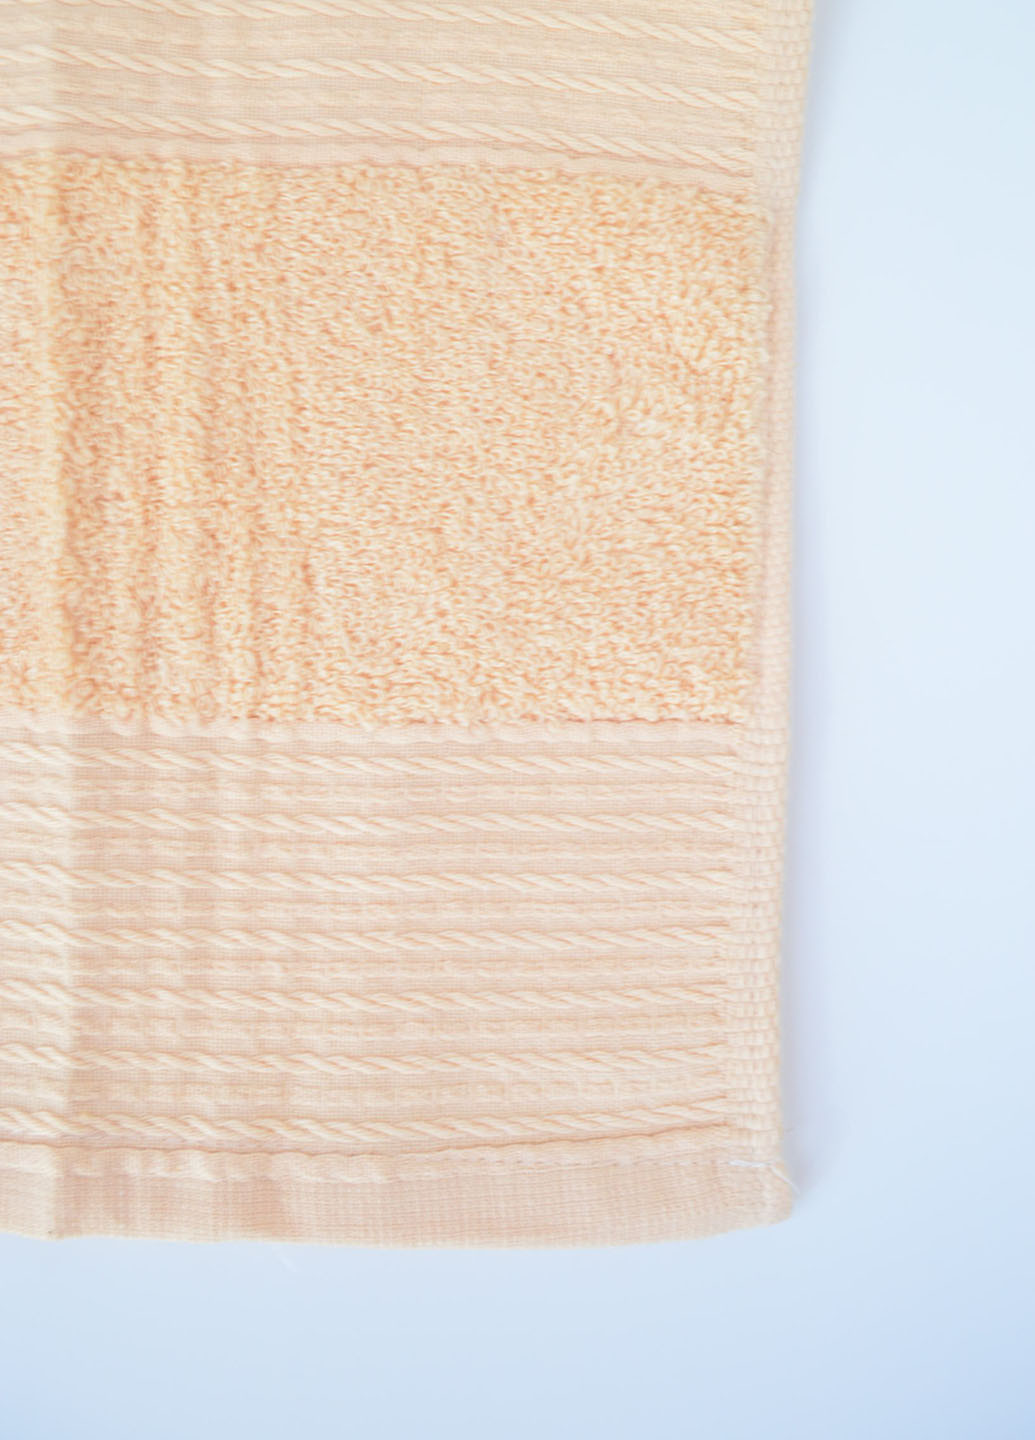 Homedec полотенце лицевое махровое 100х50 см однотонный светло-бежевый производство - Турция